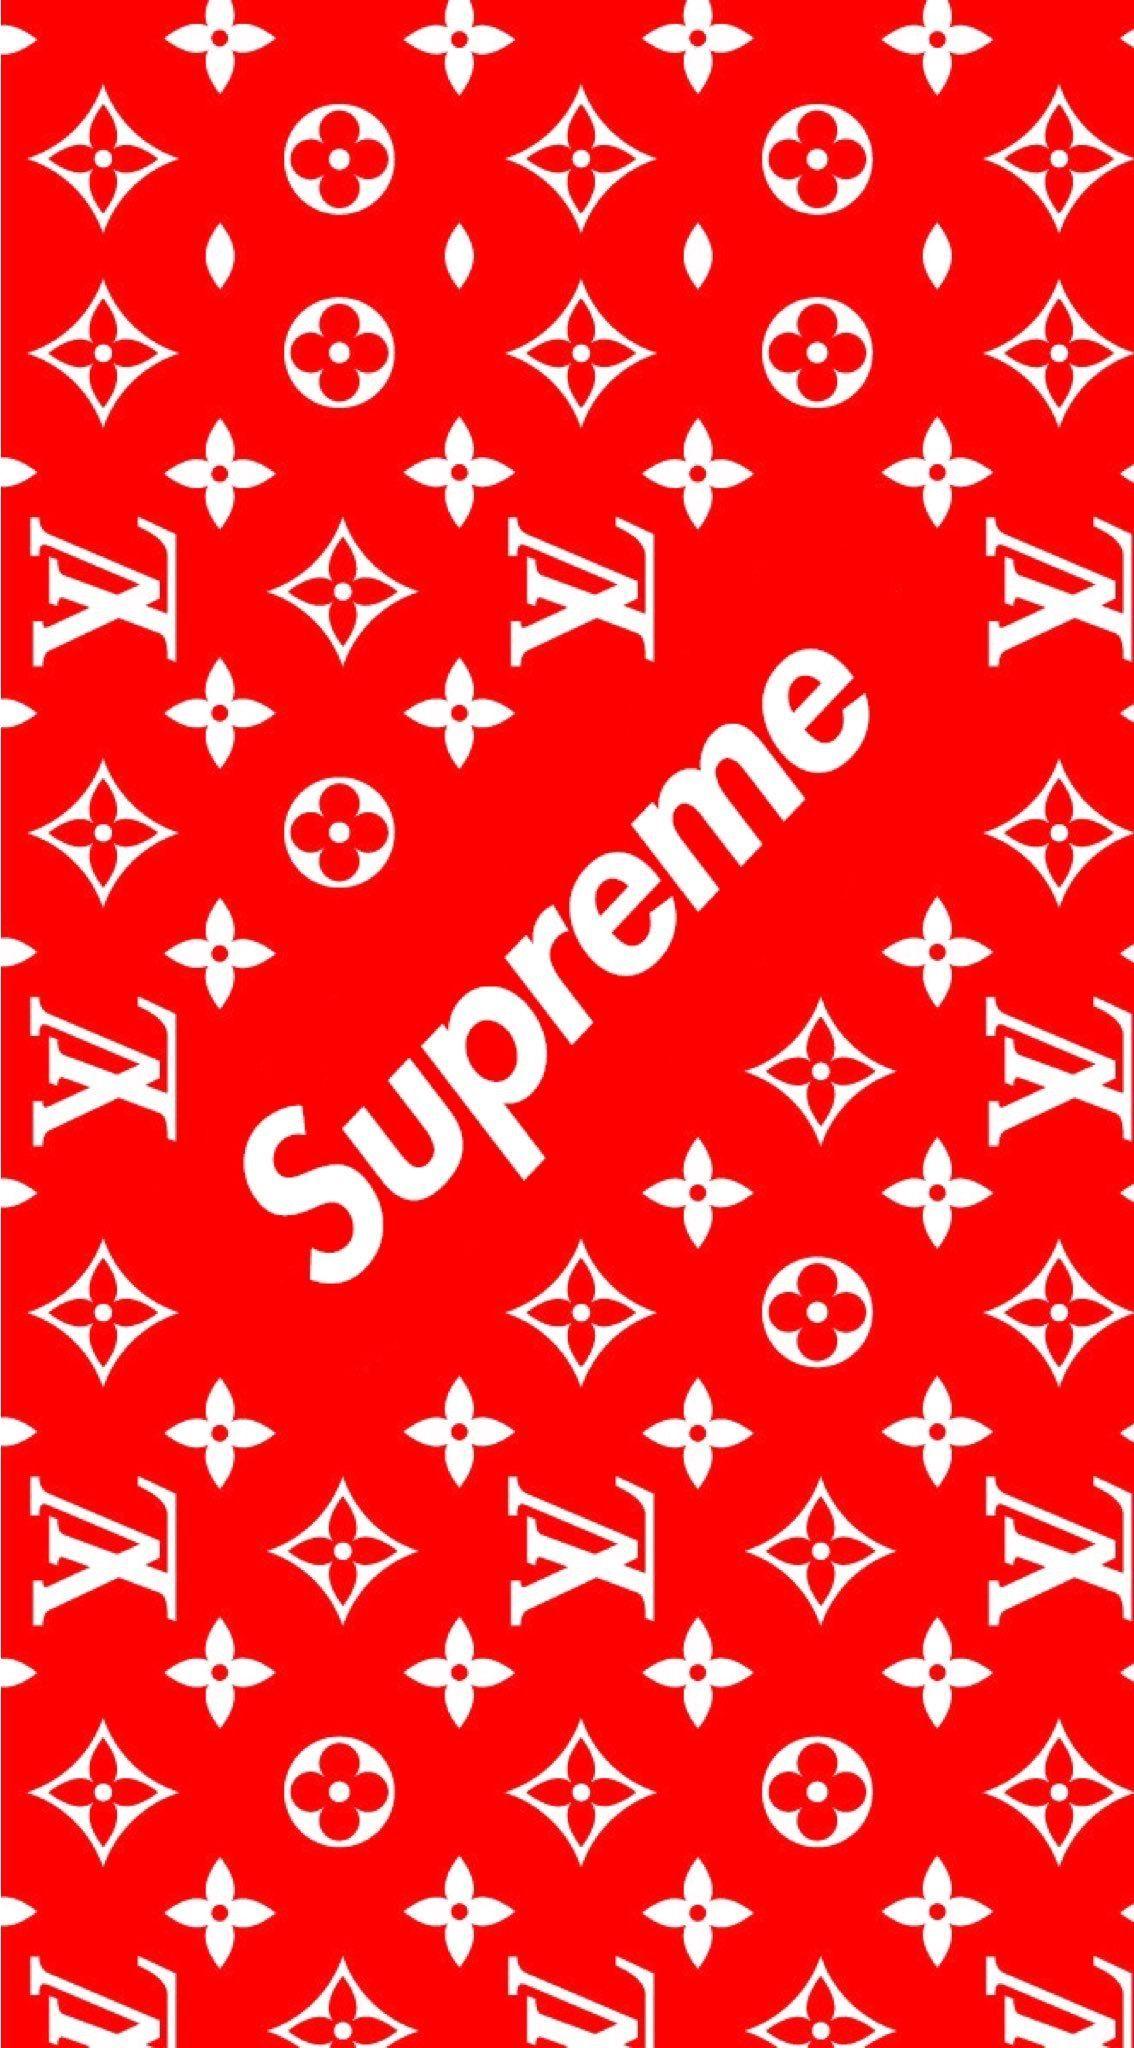 Supreme X Louis Vuitton Logo - Supreme x Louis Vuitton | Brands | Pinterest | Supreme wallpaper ...